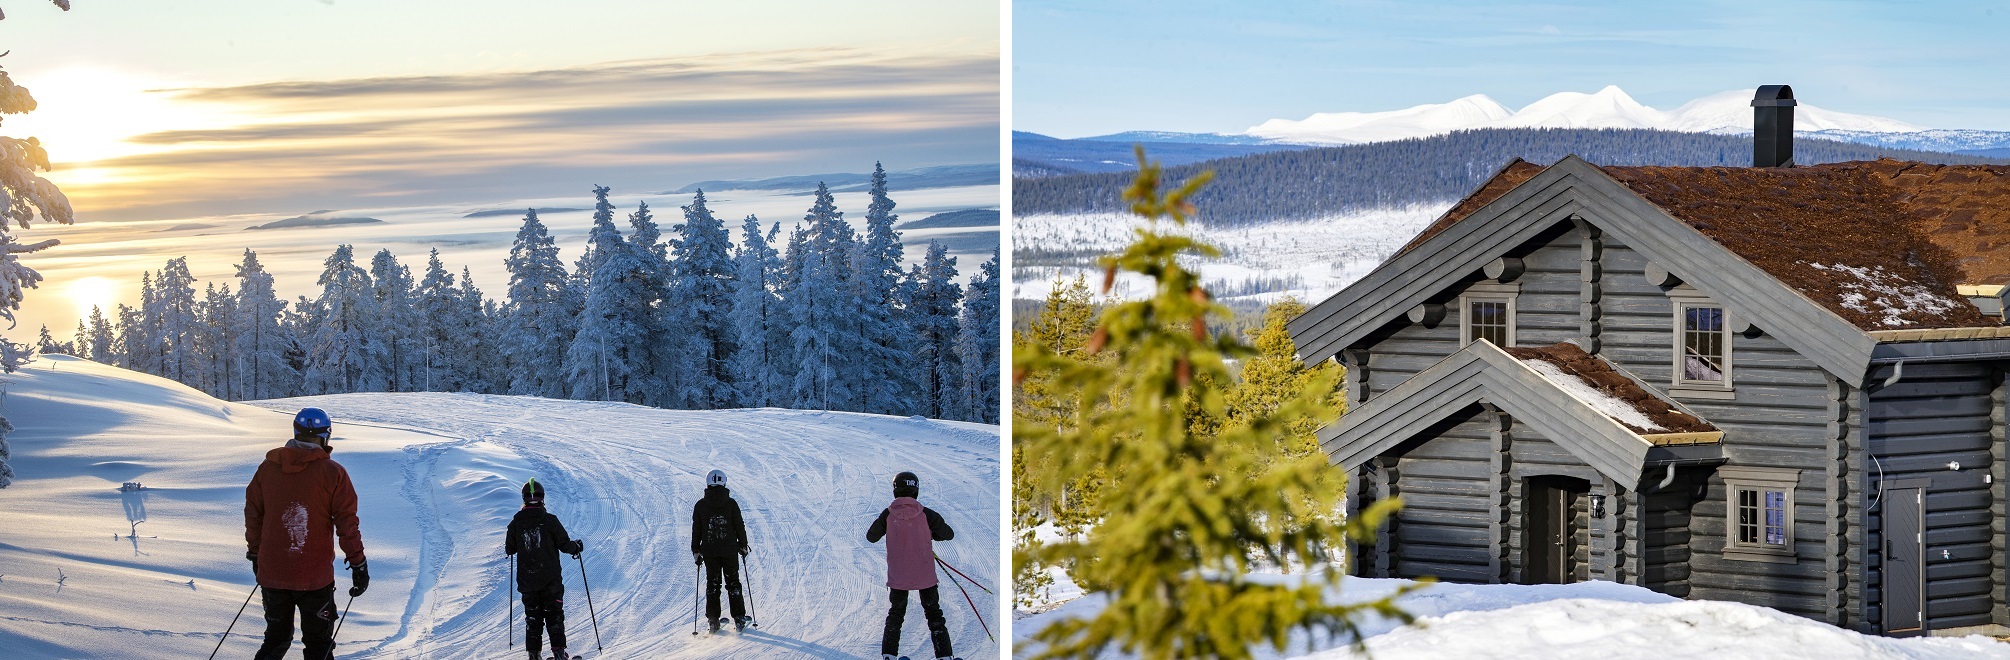 Fotocollage af skiløbere og hytter.